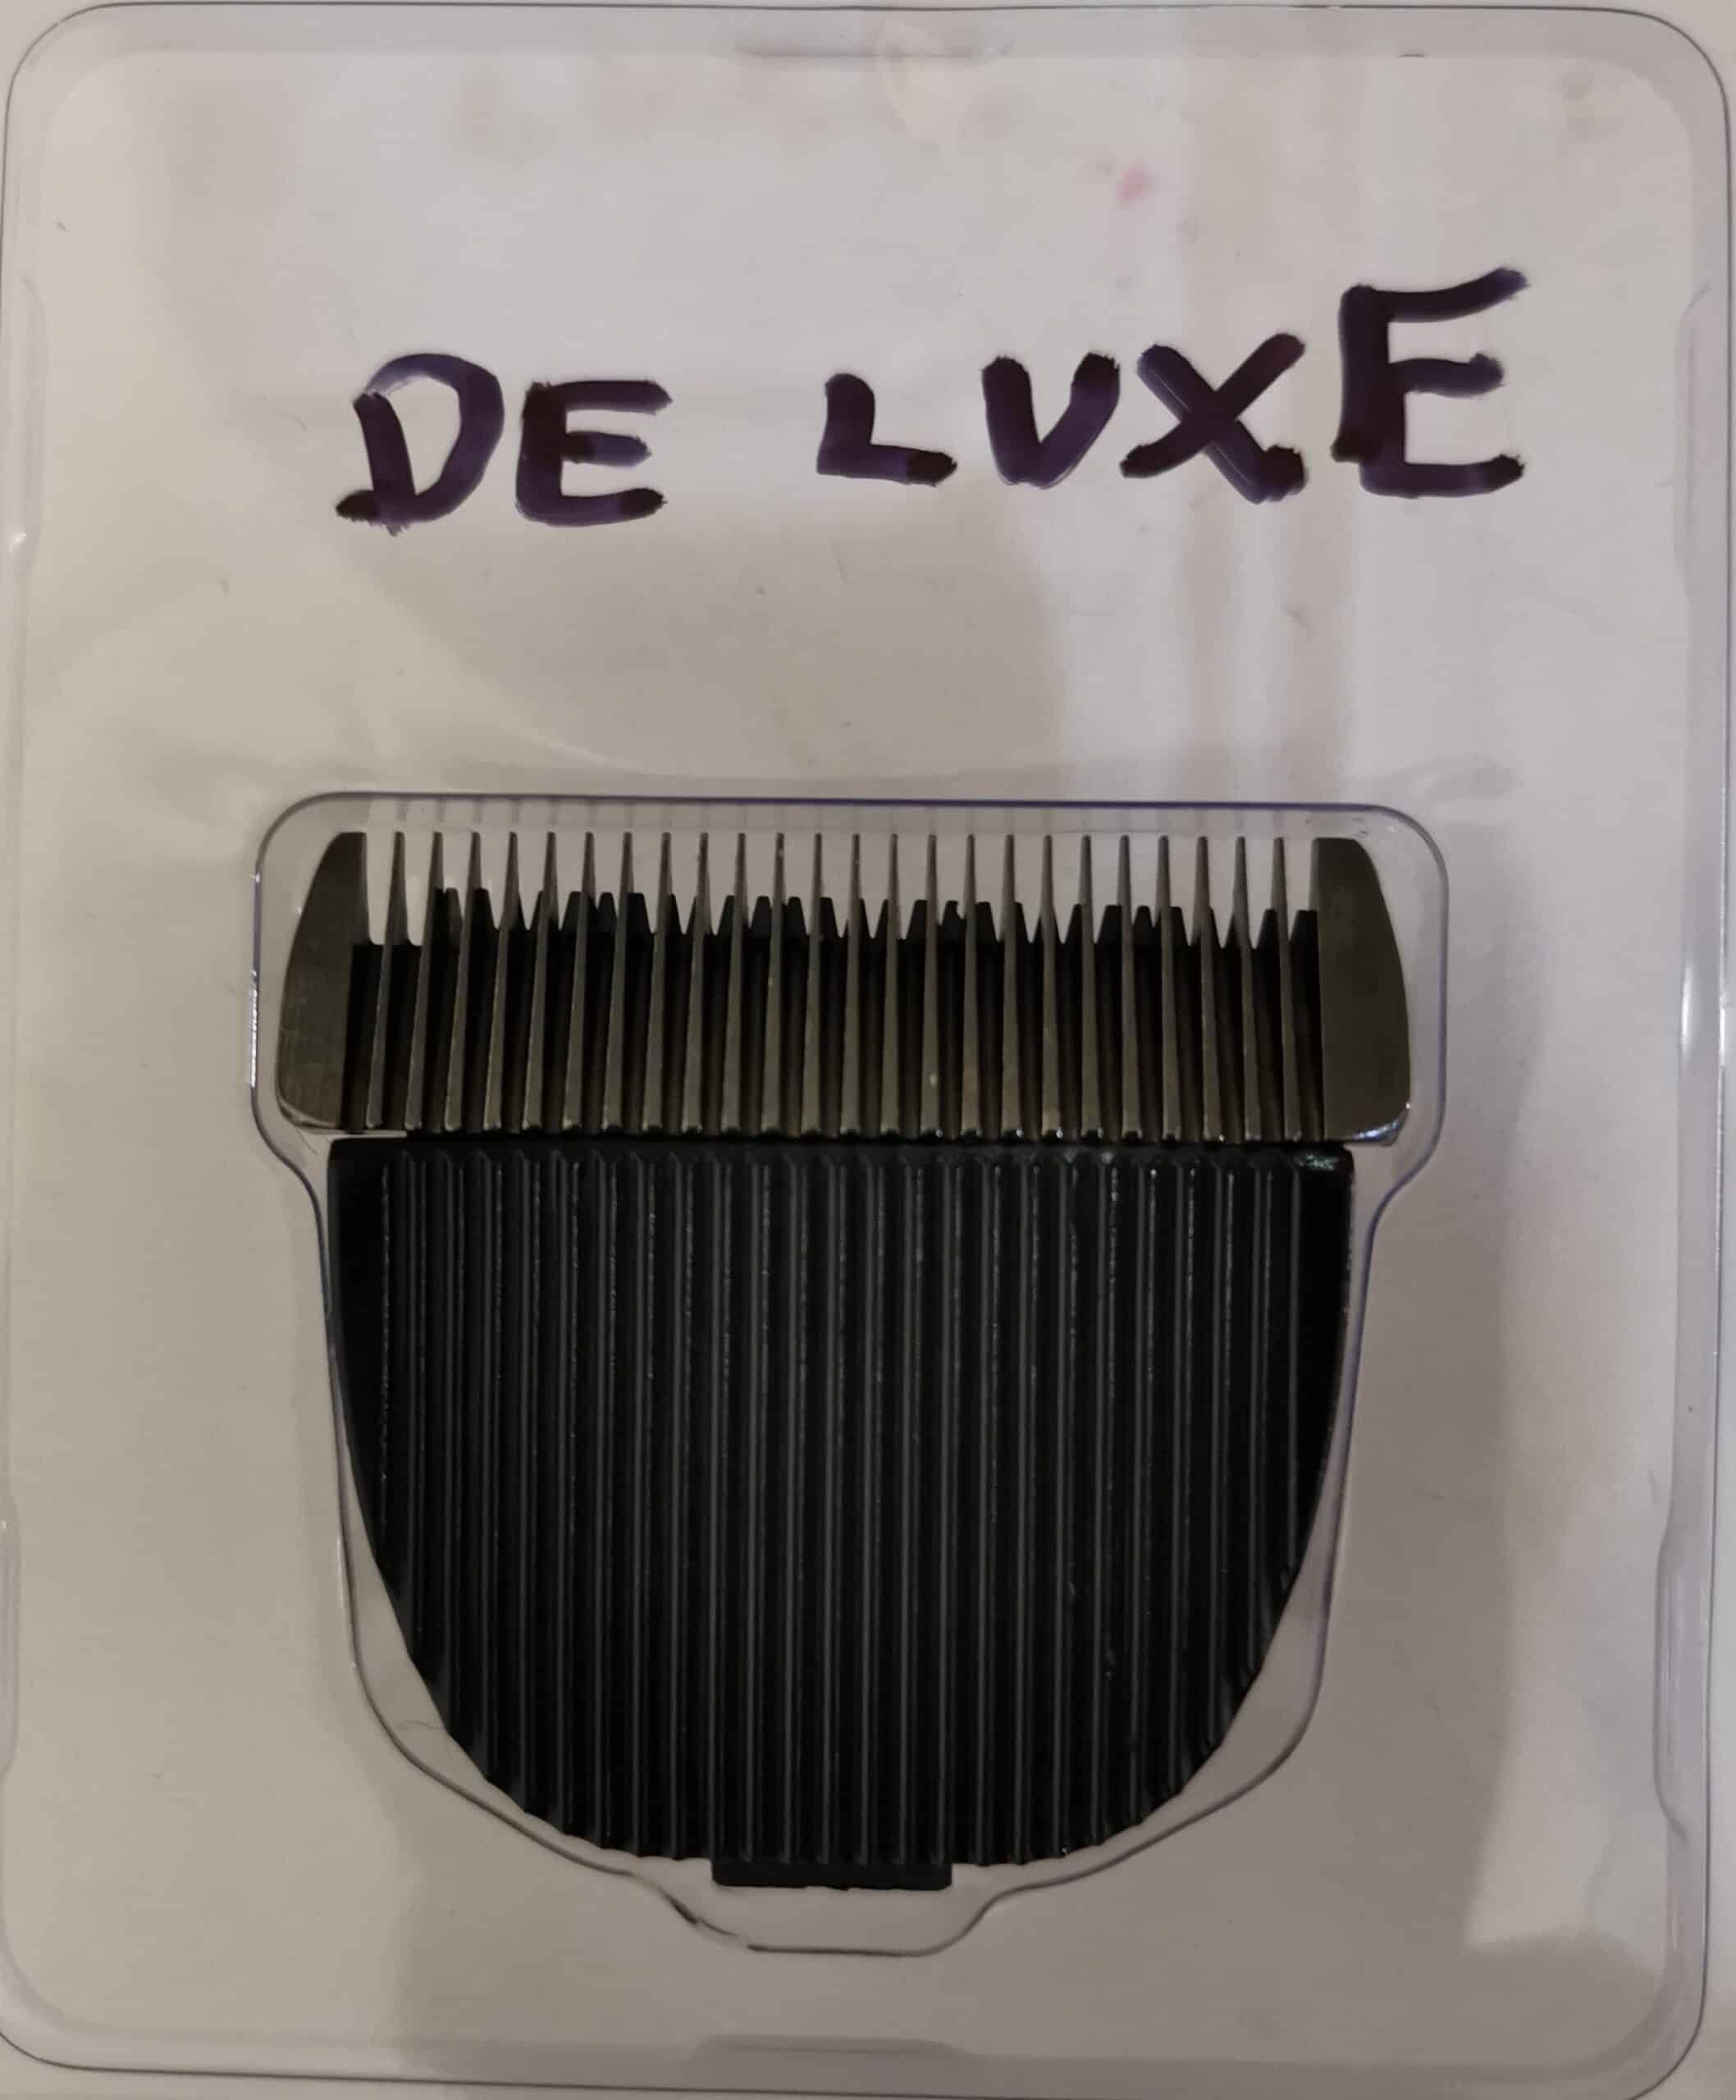 Läpinäkyvässä paketissa iClipper De Luxe merkkisen trimmauskoneen varaterä, etuosa kuvattuna